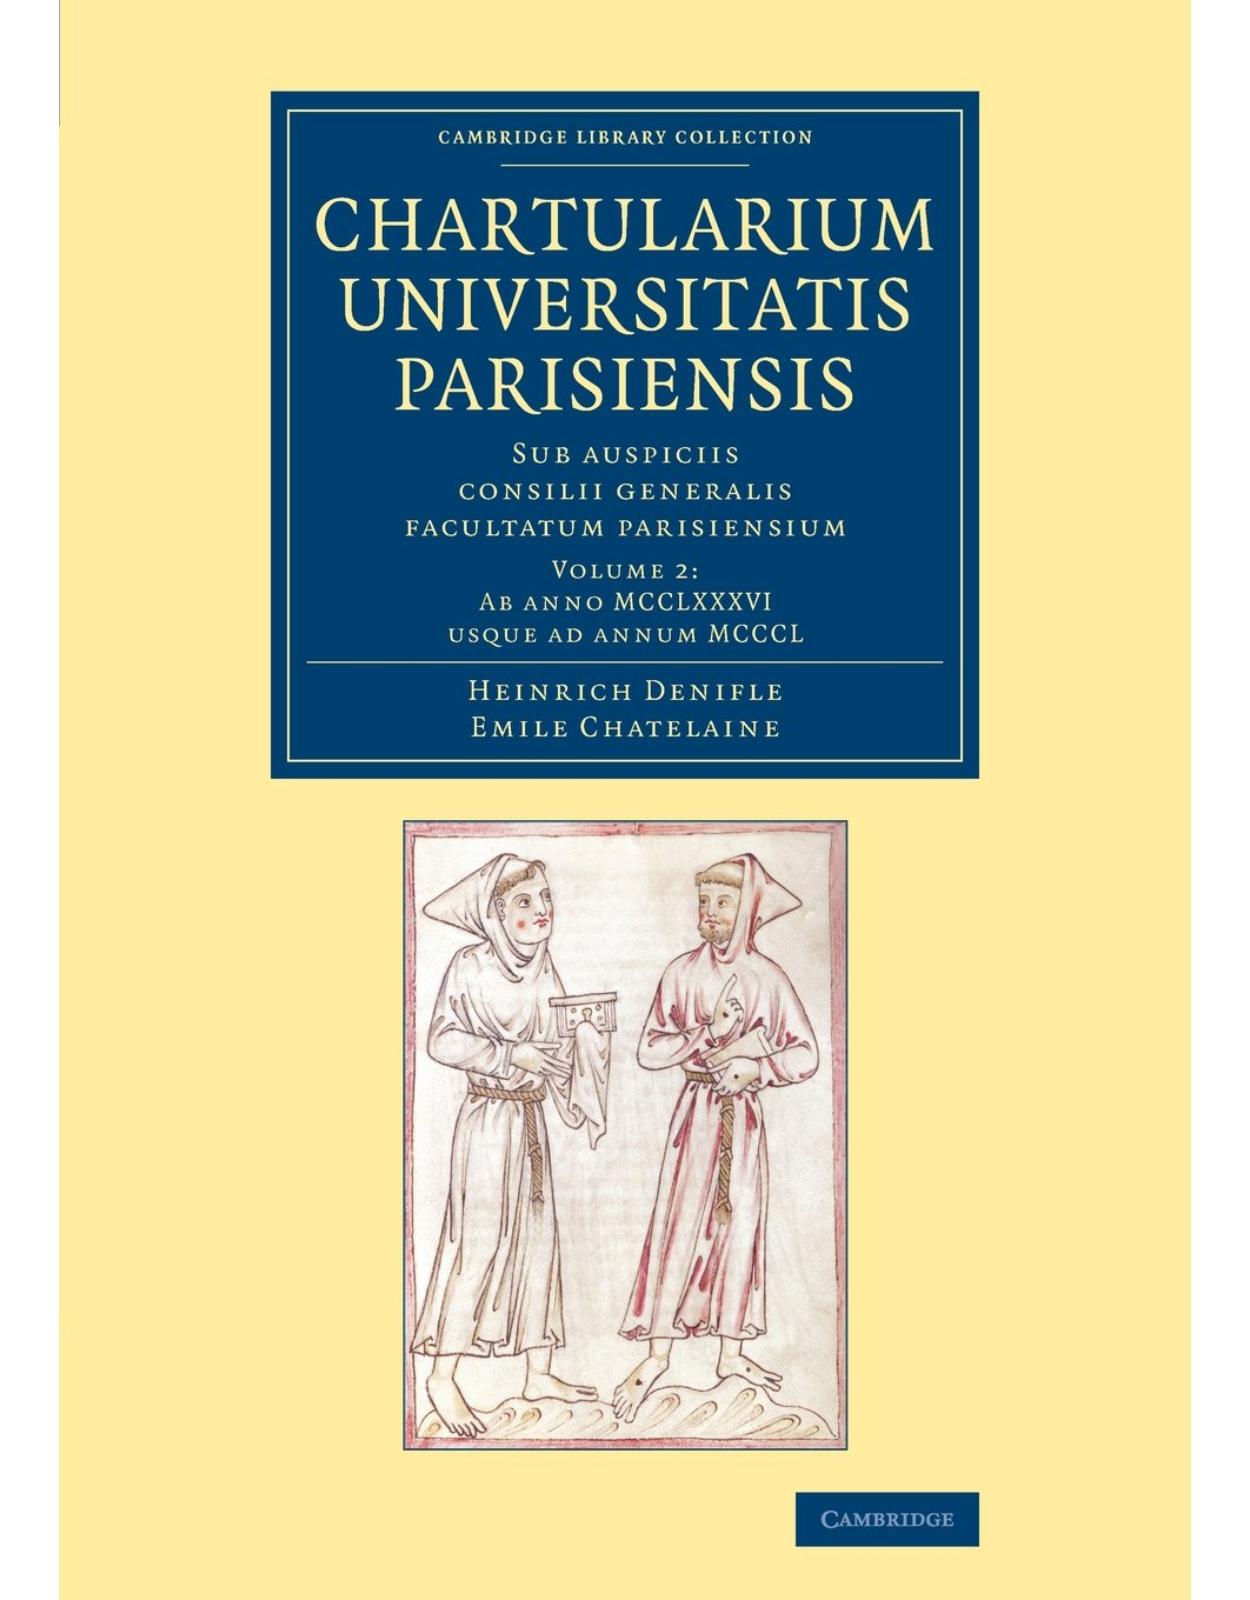 Chartularium Universitatis Parisiensis 4 Volume Set: Sub auspiciis consilii generalis facultatum parisiensium (Cambridge Library Collection - Medieval History) (Latin)